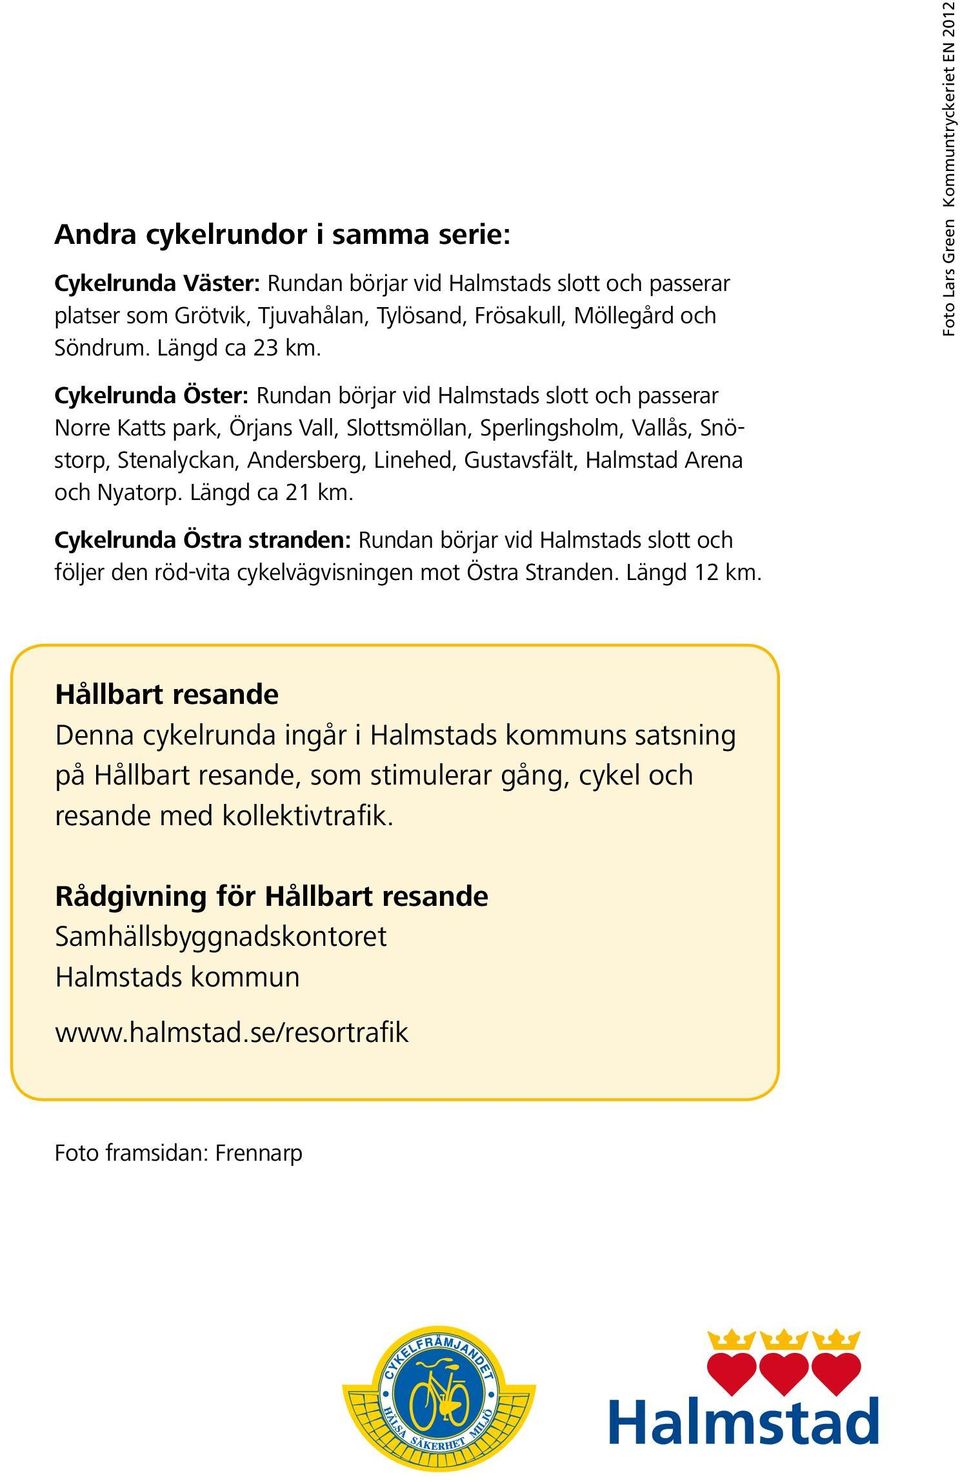 Andersberg, Linehed, Gustavsfält, Halmstad Arena och Nyatorp. Längd ca 21 km. Cykelrunda Östra stranden: Rundan börjar vid Halmstads slott och följer den röd-vita cykelvägvisningen mot Östra Stranden.